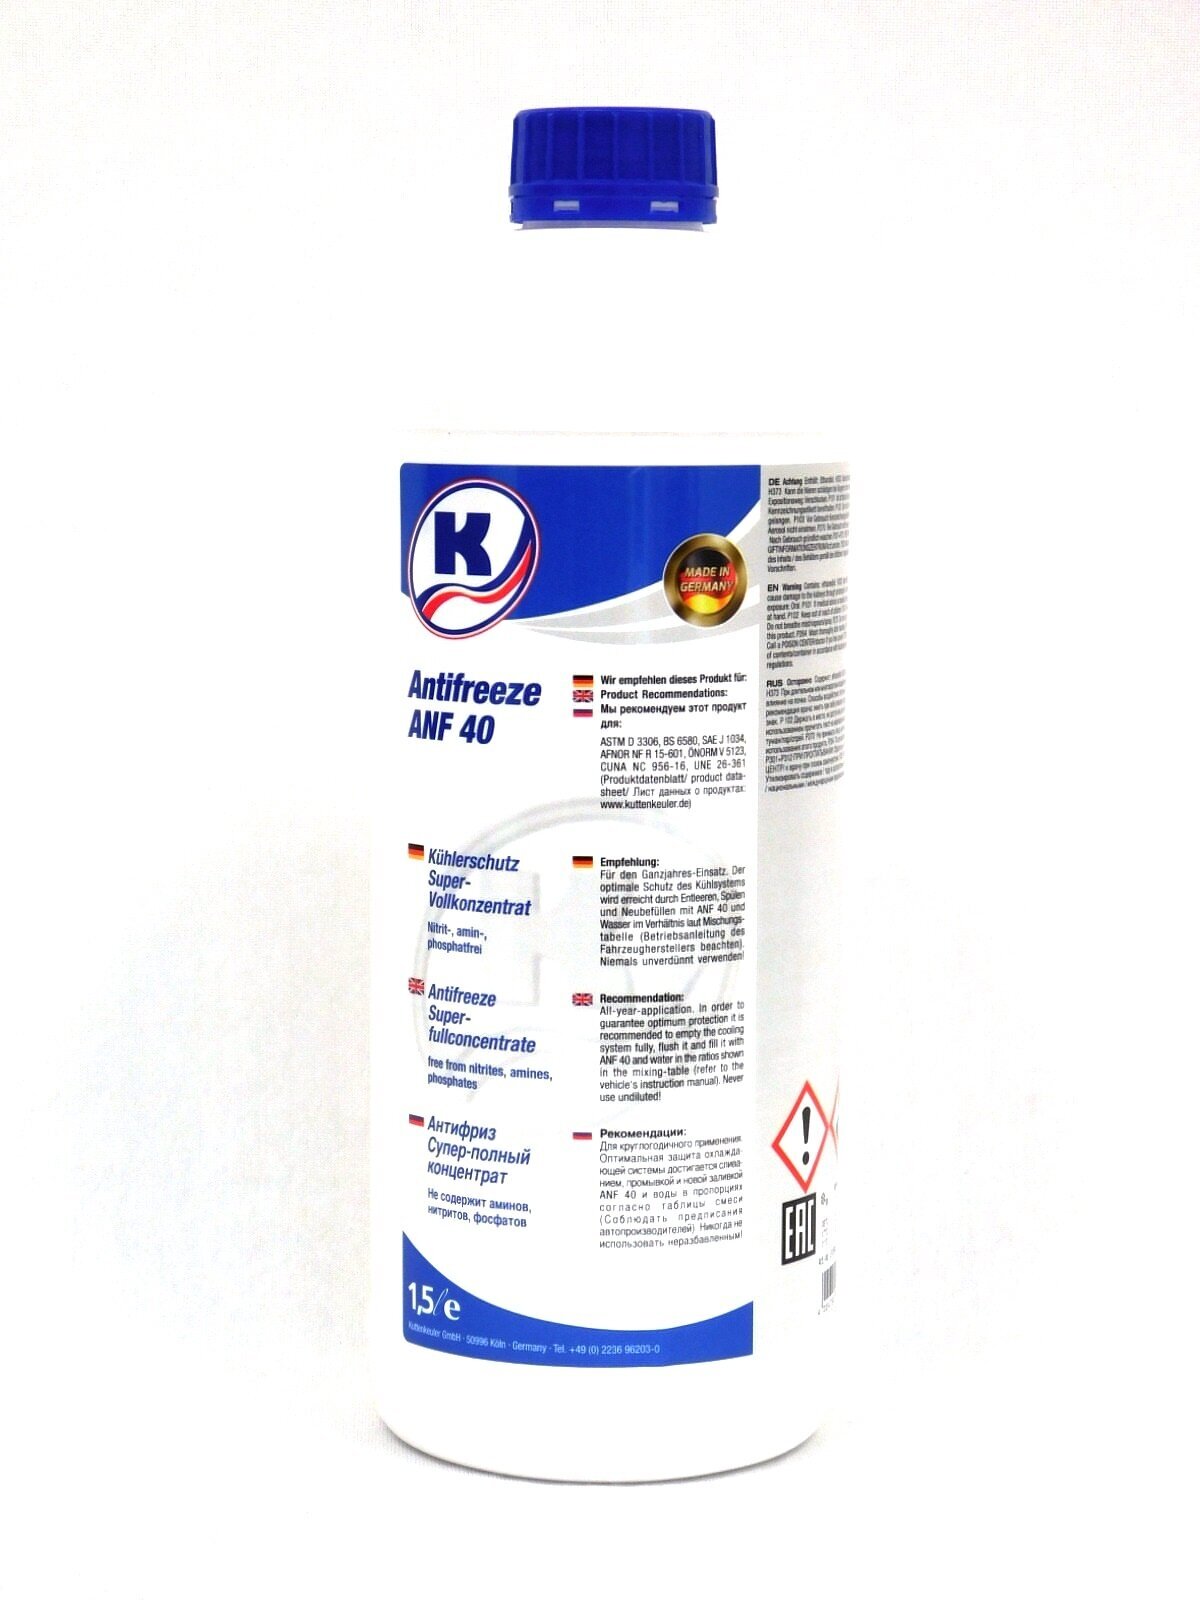 Антифриз Kuttenkeuler Antifreeze ANF40 синий (Германия) 1,5л концентрат + 1,5л дистиллированная вода в Подарок!